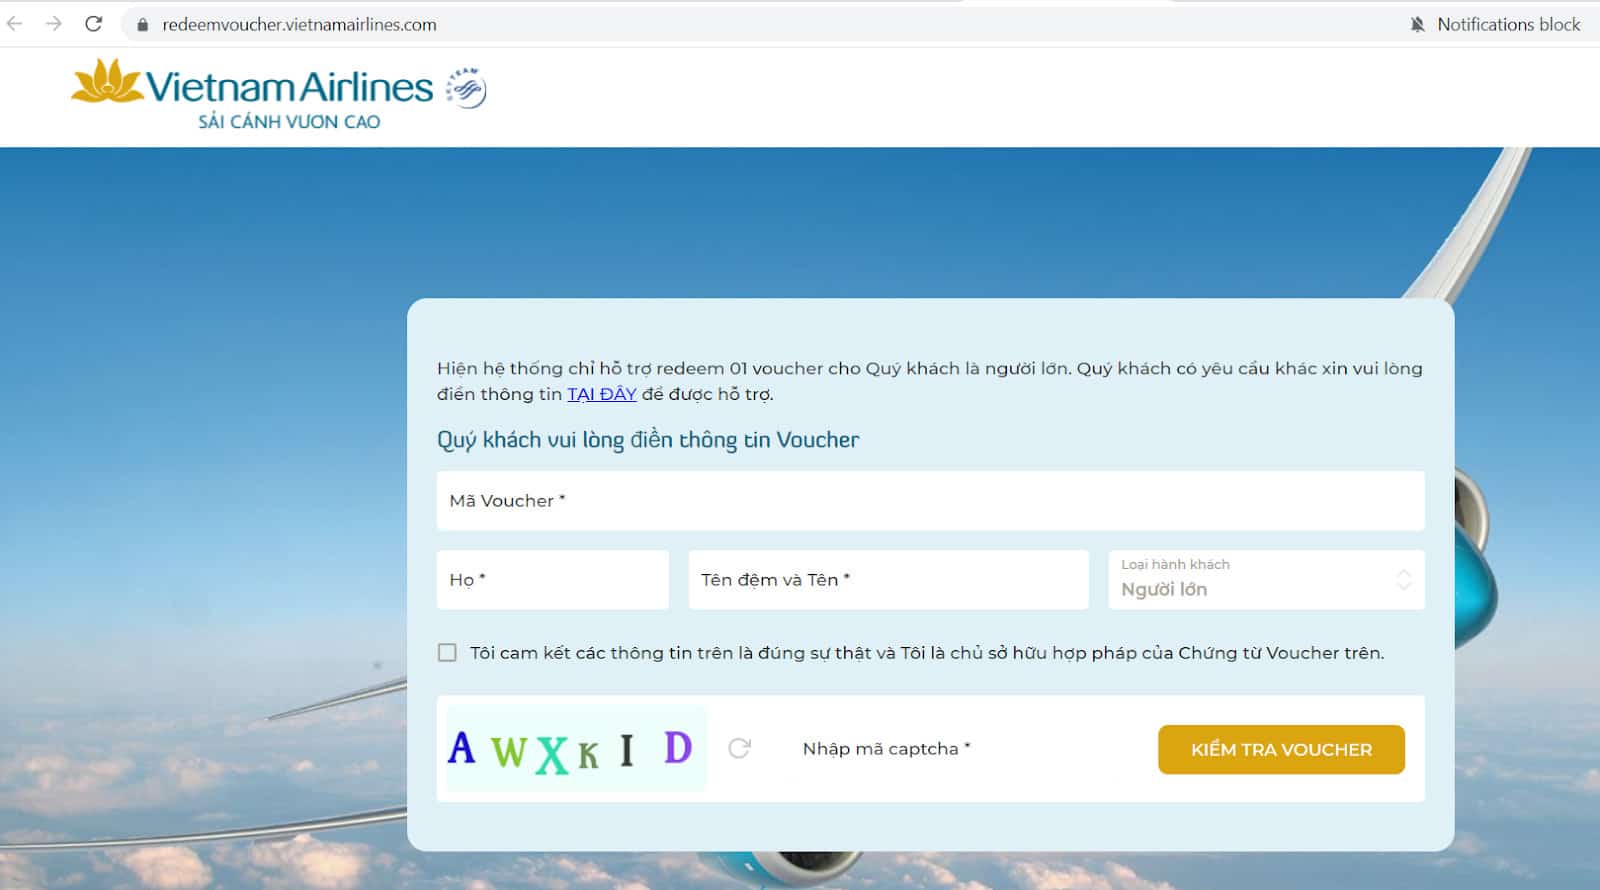 Hướng dẫn hoàn đổi vé Vietnam Airlines về tài khoản - Điền thông tin cá nhân